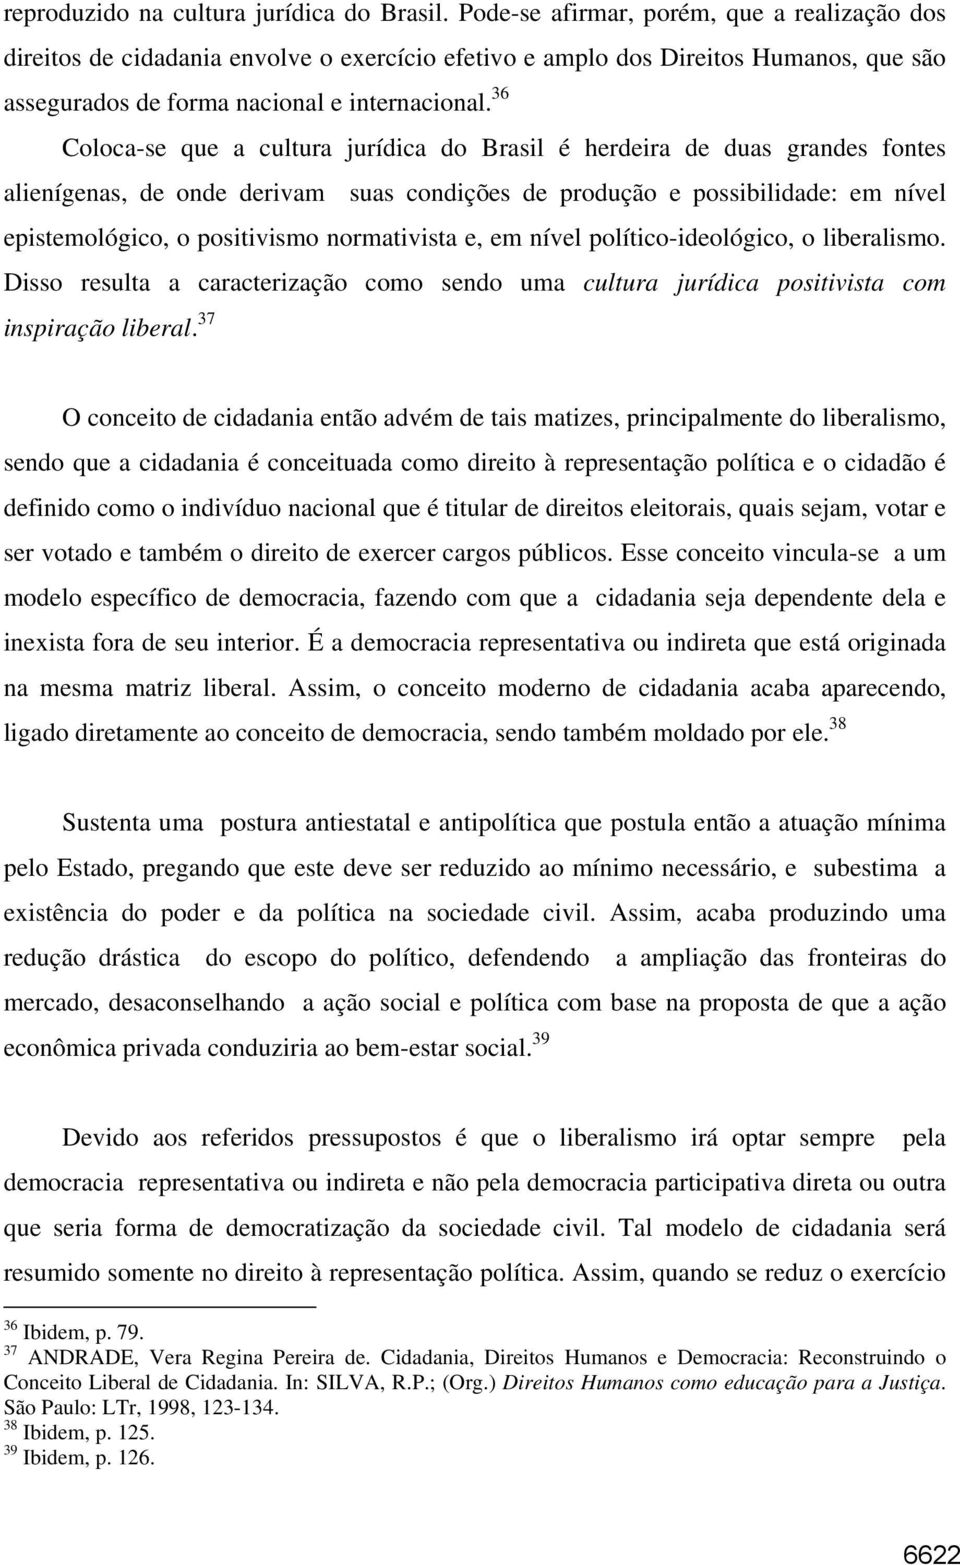 36 Coloca-se que a cultura jurídica do Brasil é herdeira de duas grandes fontes alienígenas, de onde derivam suas condições de produção e possibilidade: em nível epistemológico, o positivismo